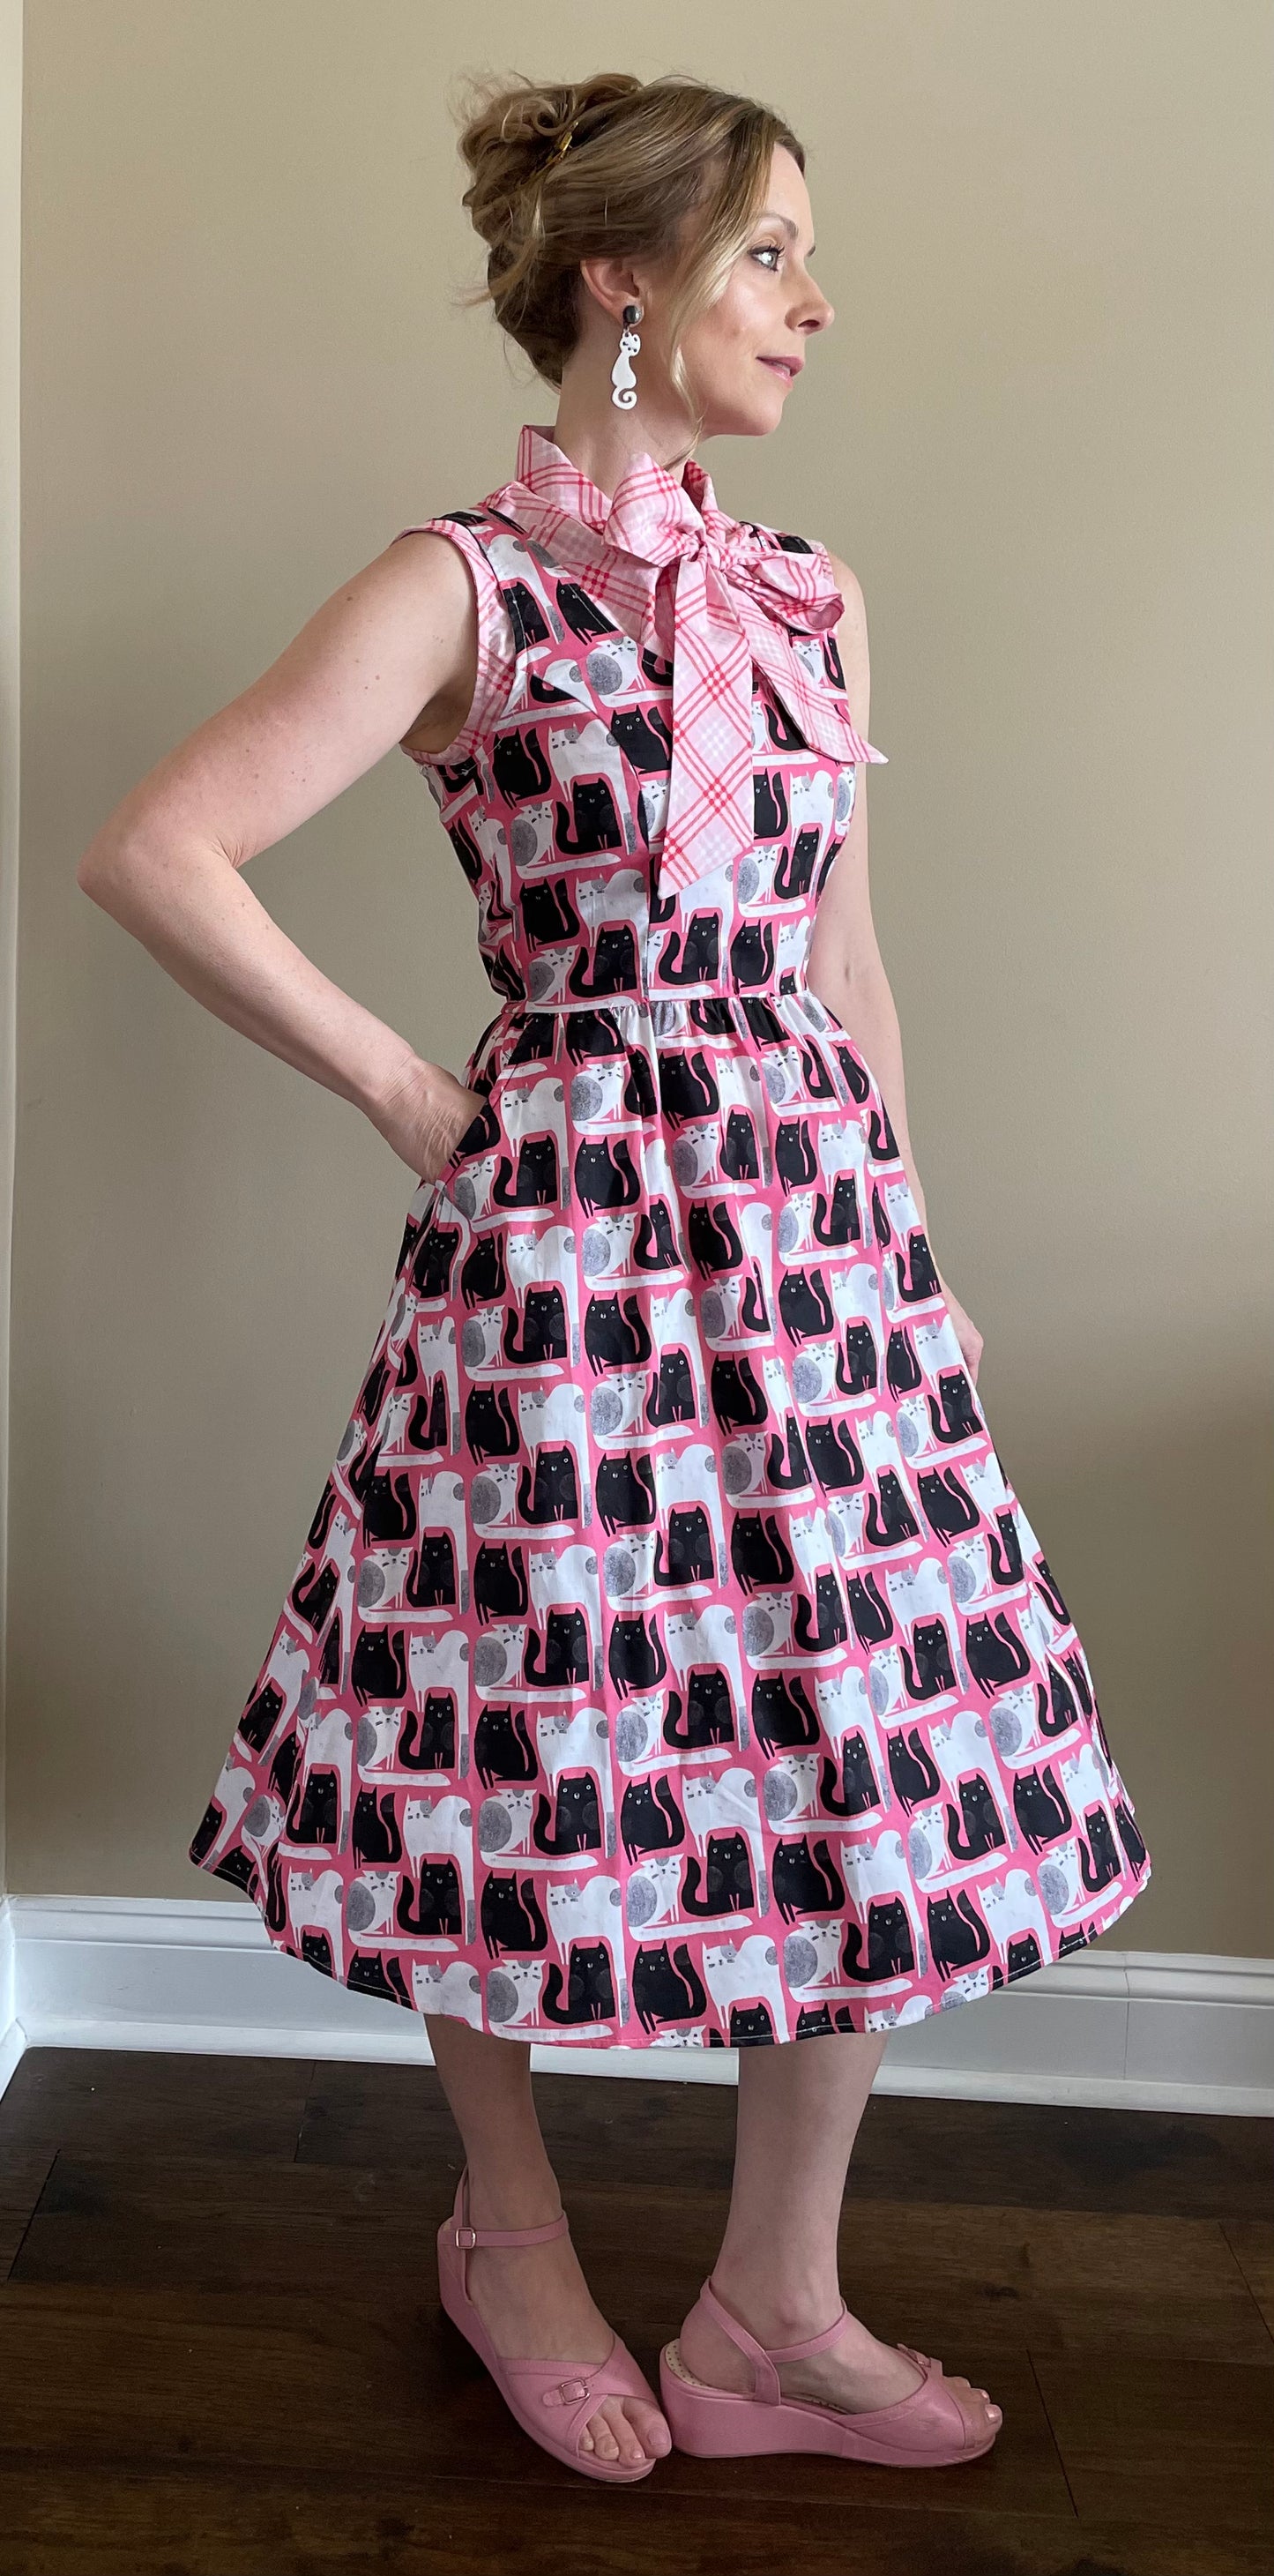 Pink Kitty Dress